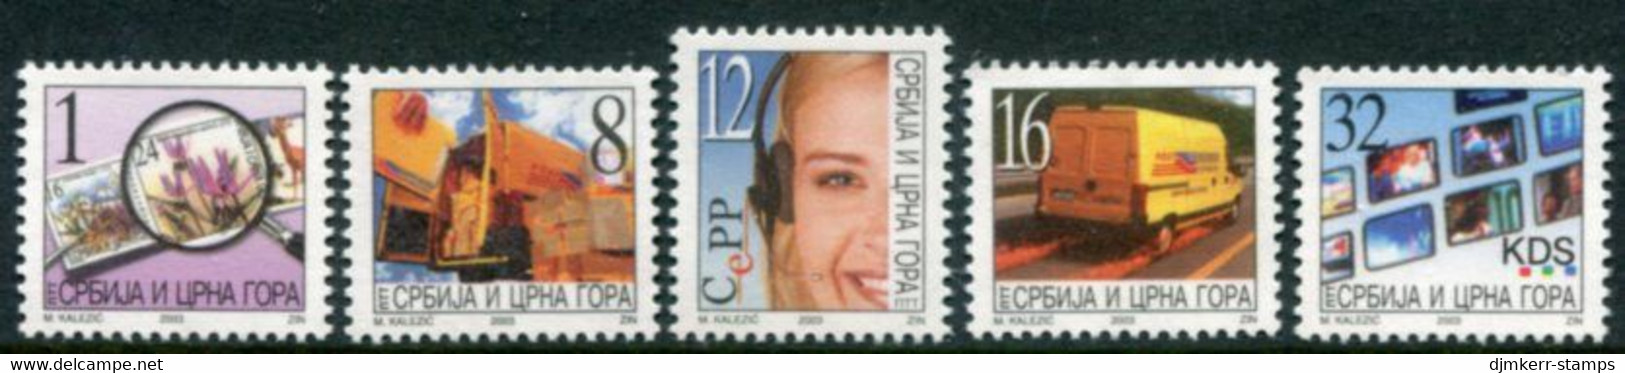 YUGOSLAVIA (Serbia & Montenegro) 2003 Definitive: Postal Services MNH / **  Michel 3133-37 - Ungebraucht